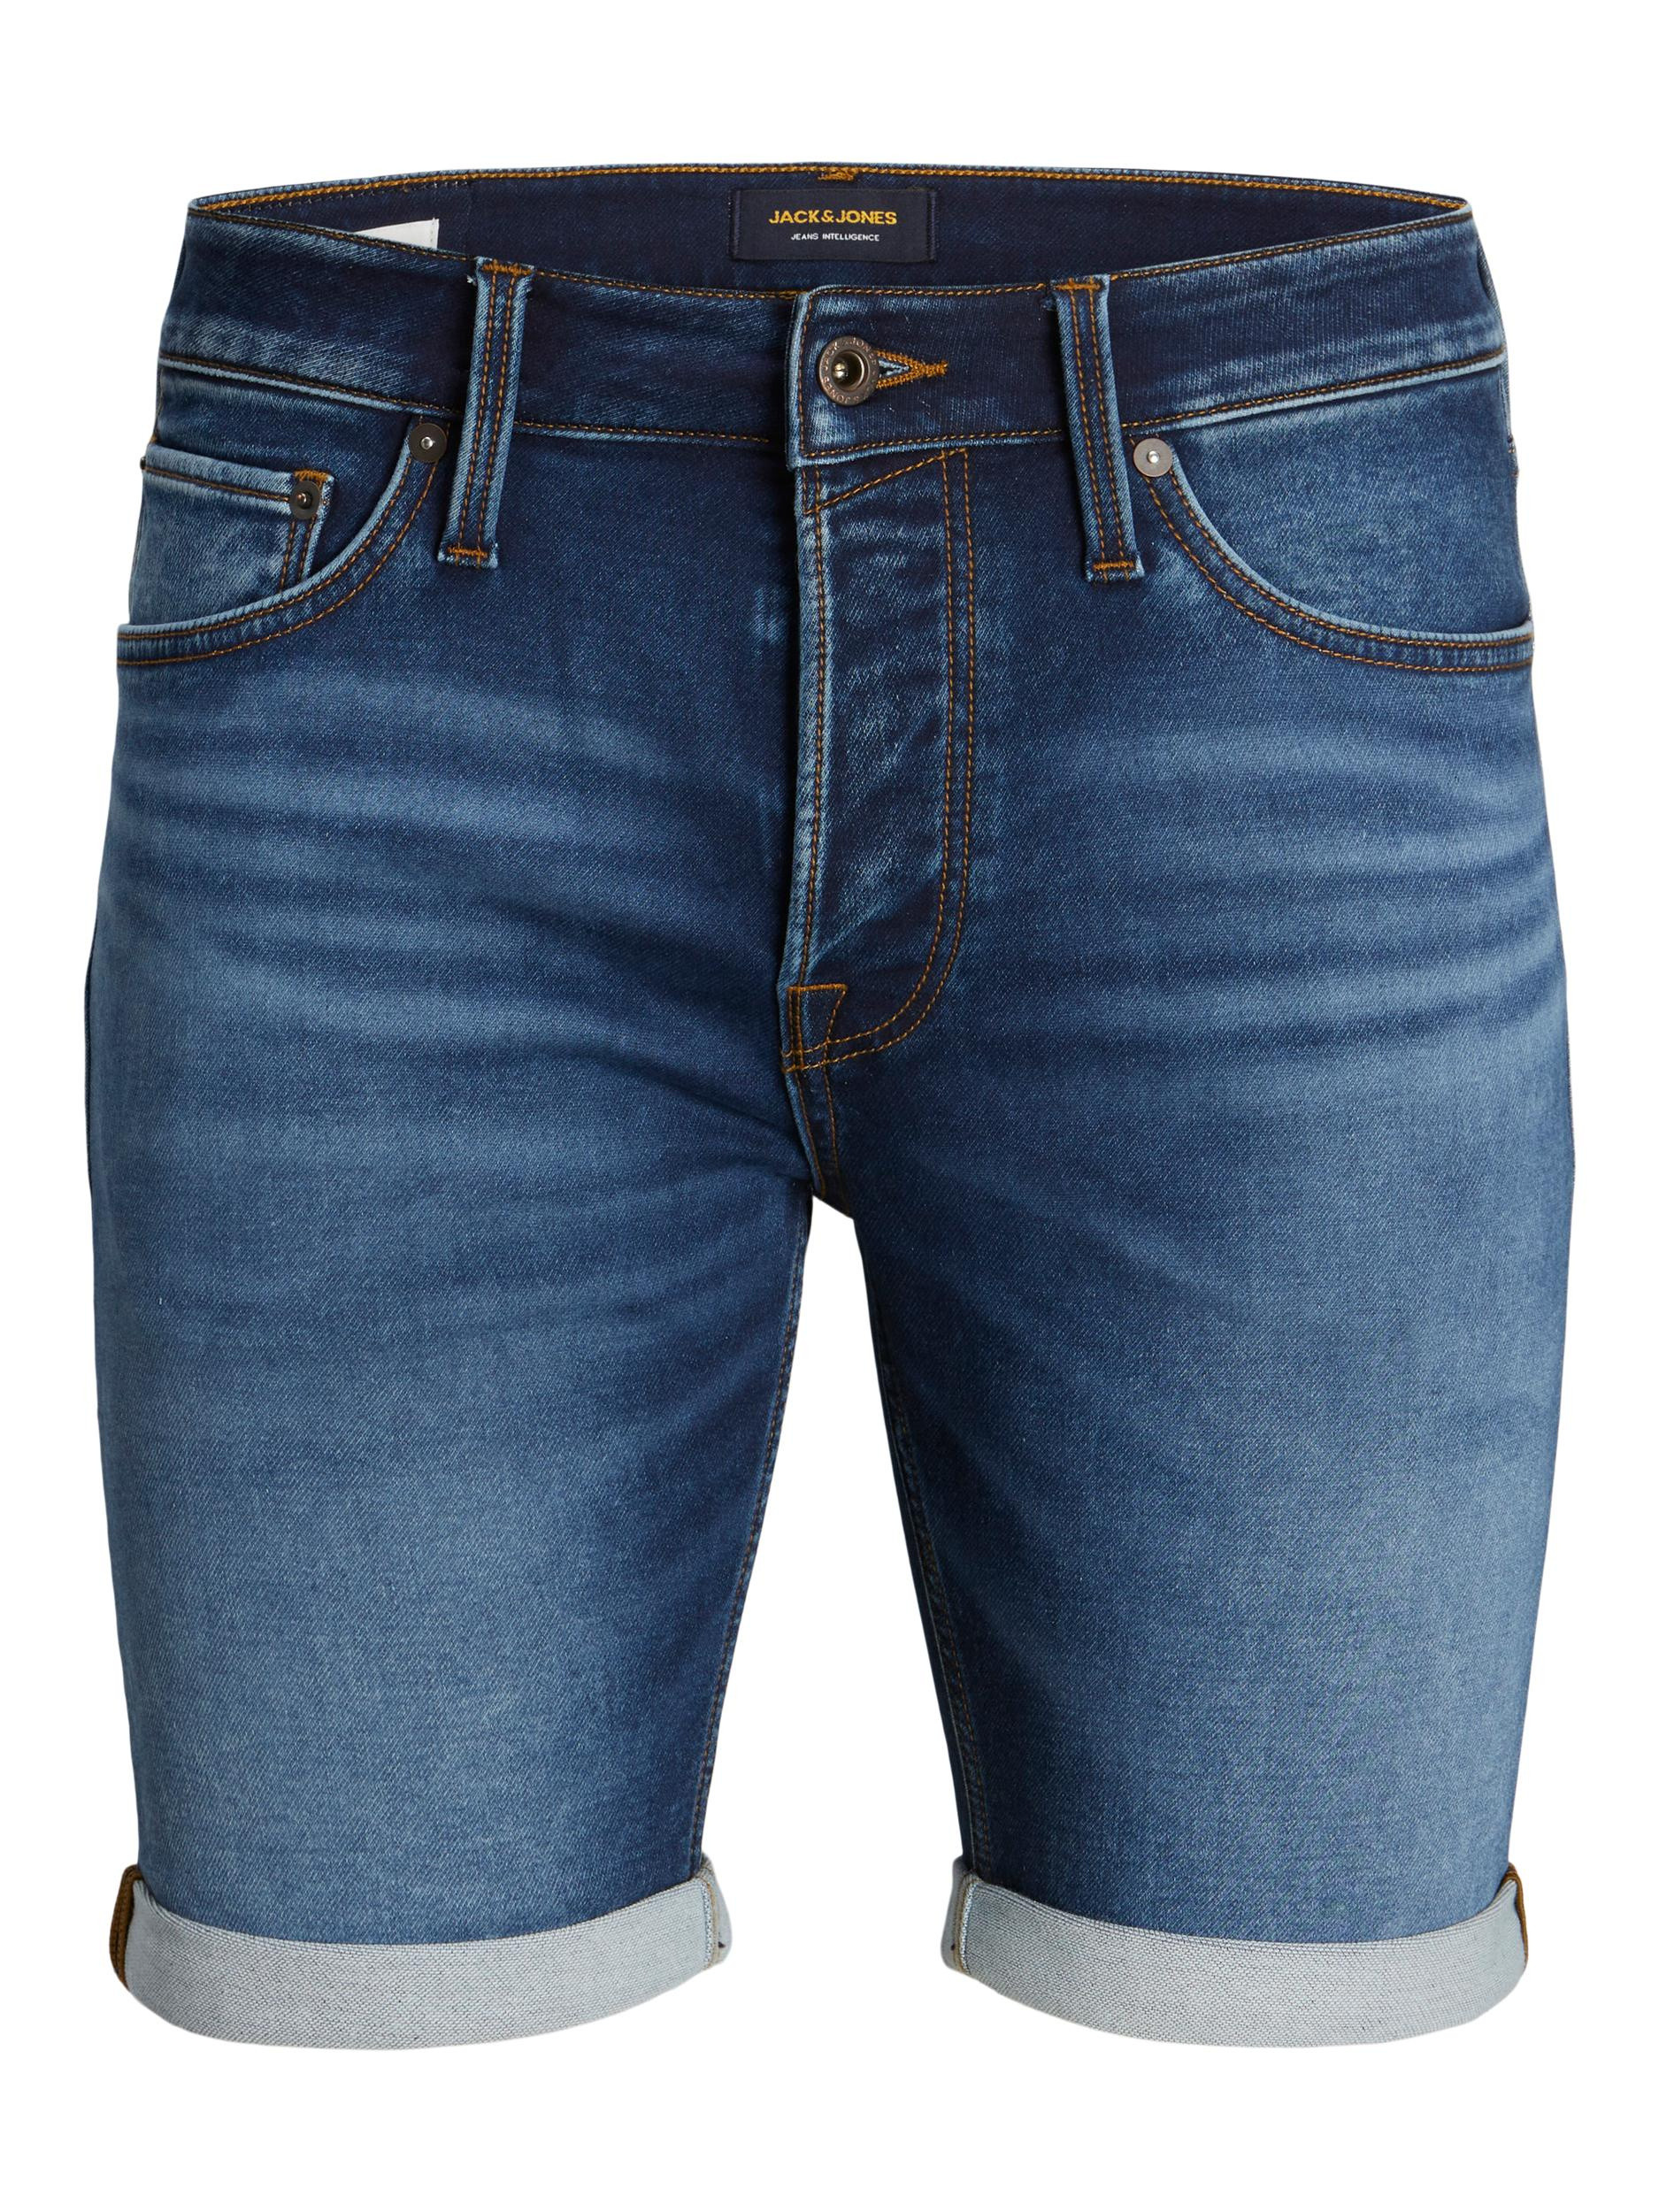 Jack & Jones - Five-pocket jeans bermuda, Denim, large image number 0